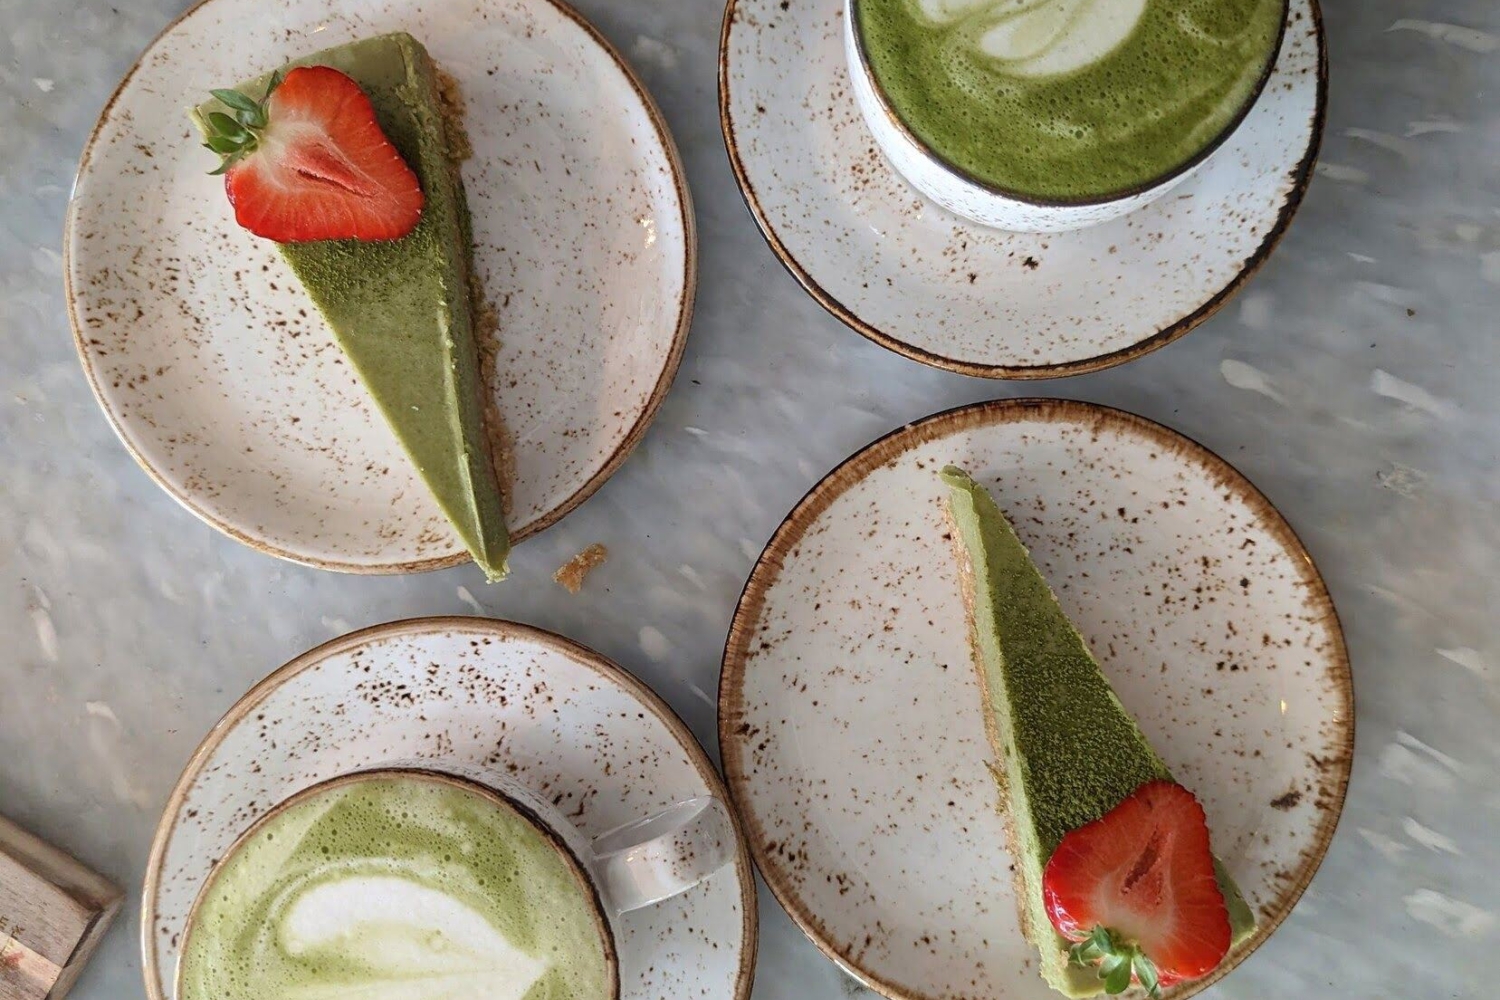 grønt-dekorert kake med jordbær på og kaffe med hjerte dekor